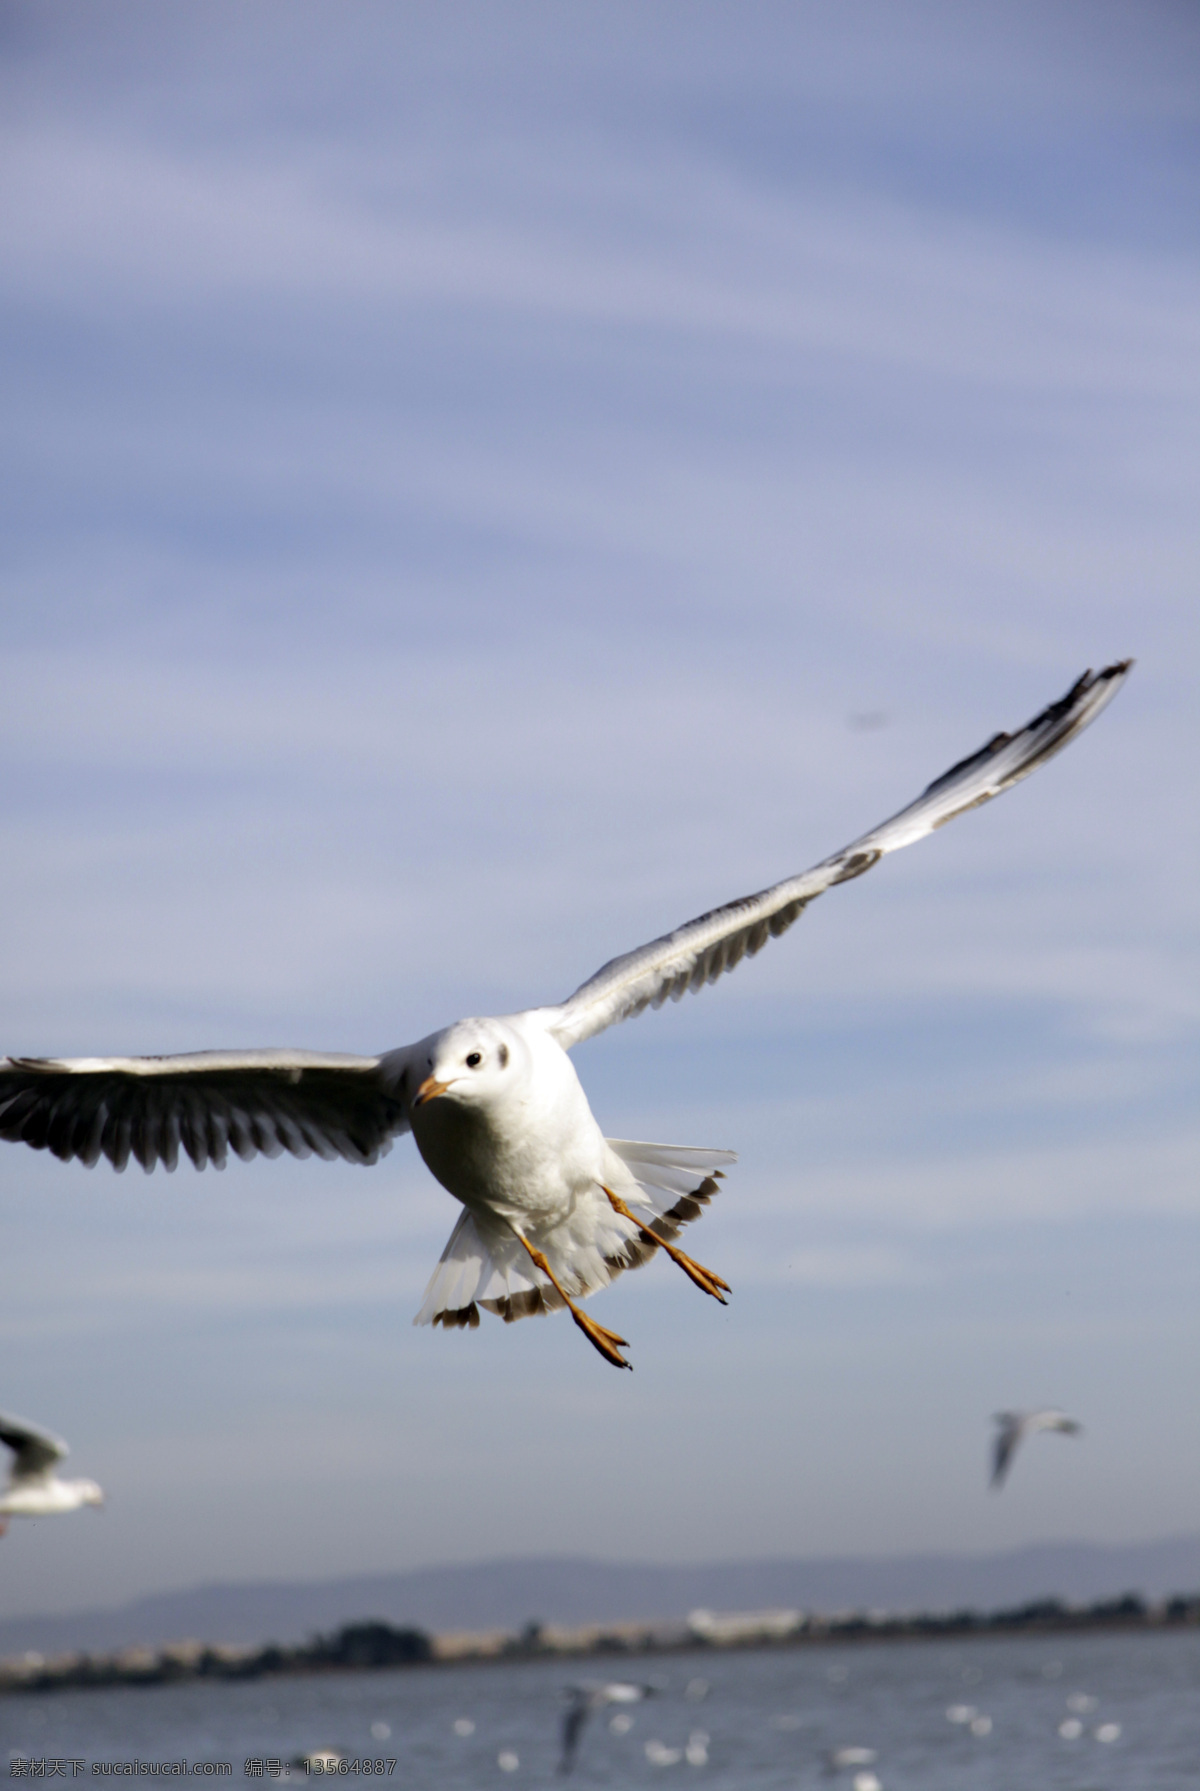 翱翔 翅膀 飞翔 海鸥 鸟类 生物世界 天空 天高任鸟飞 脊索动物 psd源文件